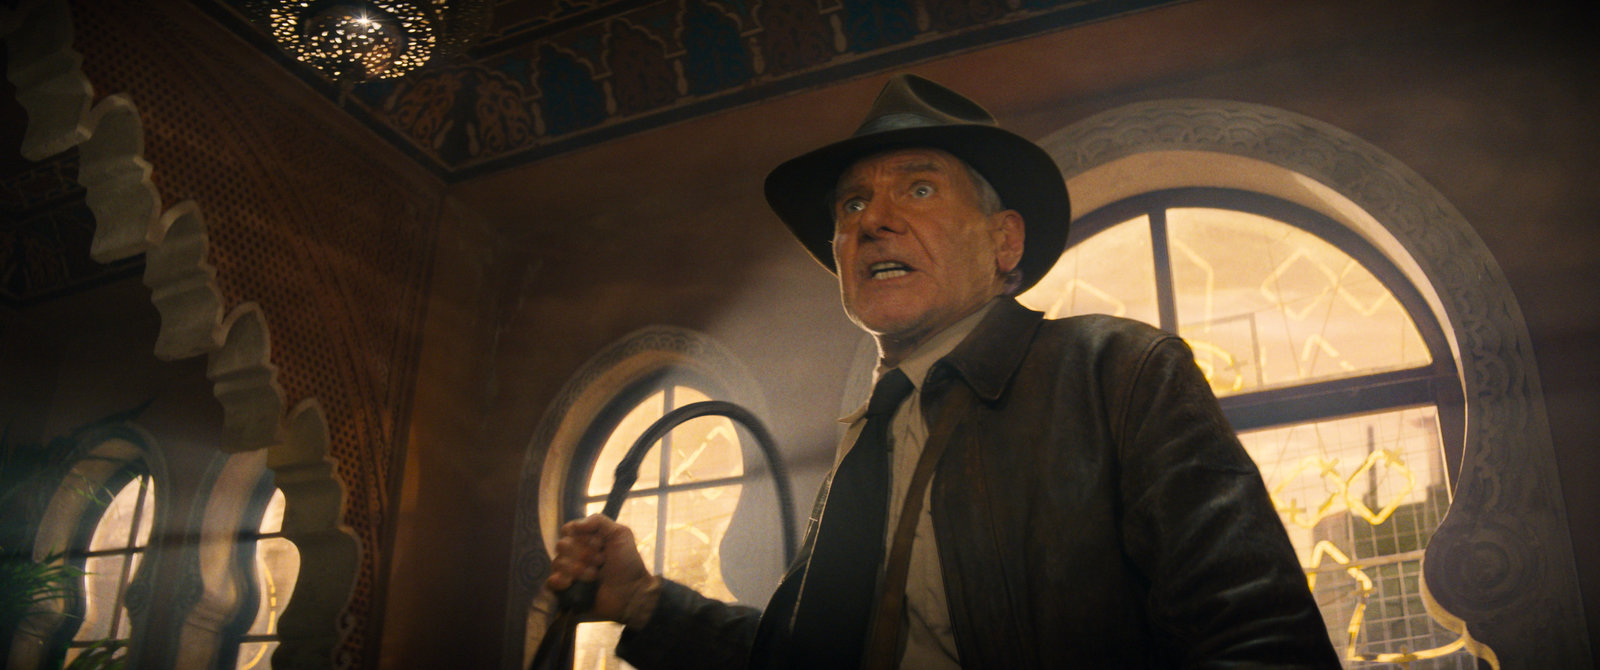 Indiana Jones und das Rad des Schicksals (4K Ultra HD)